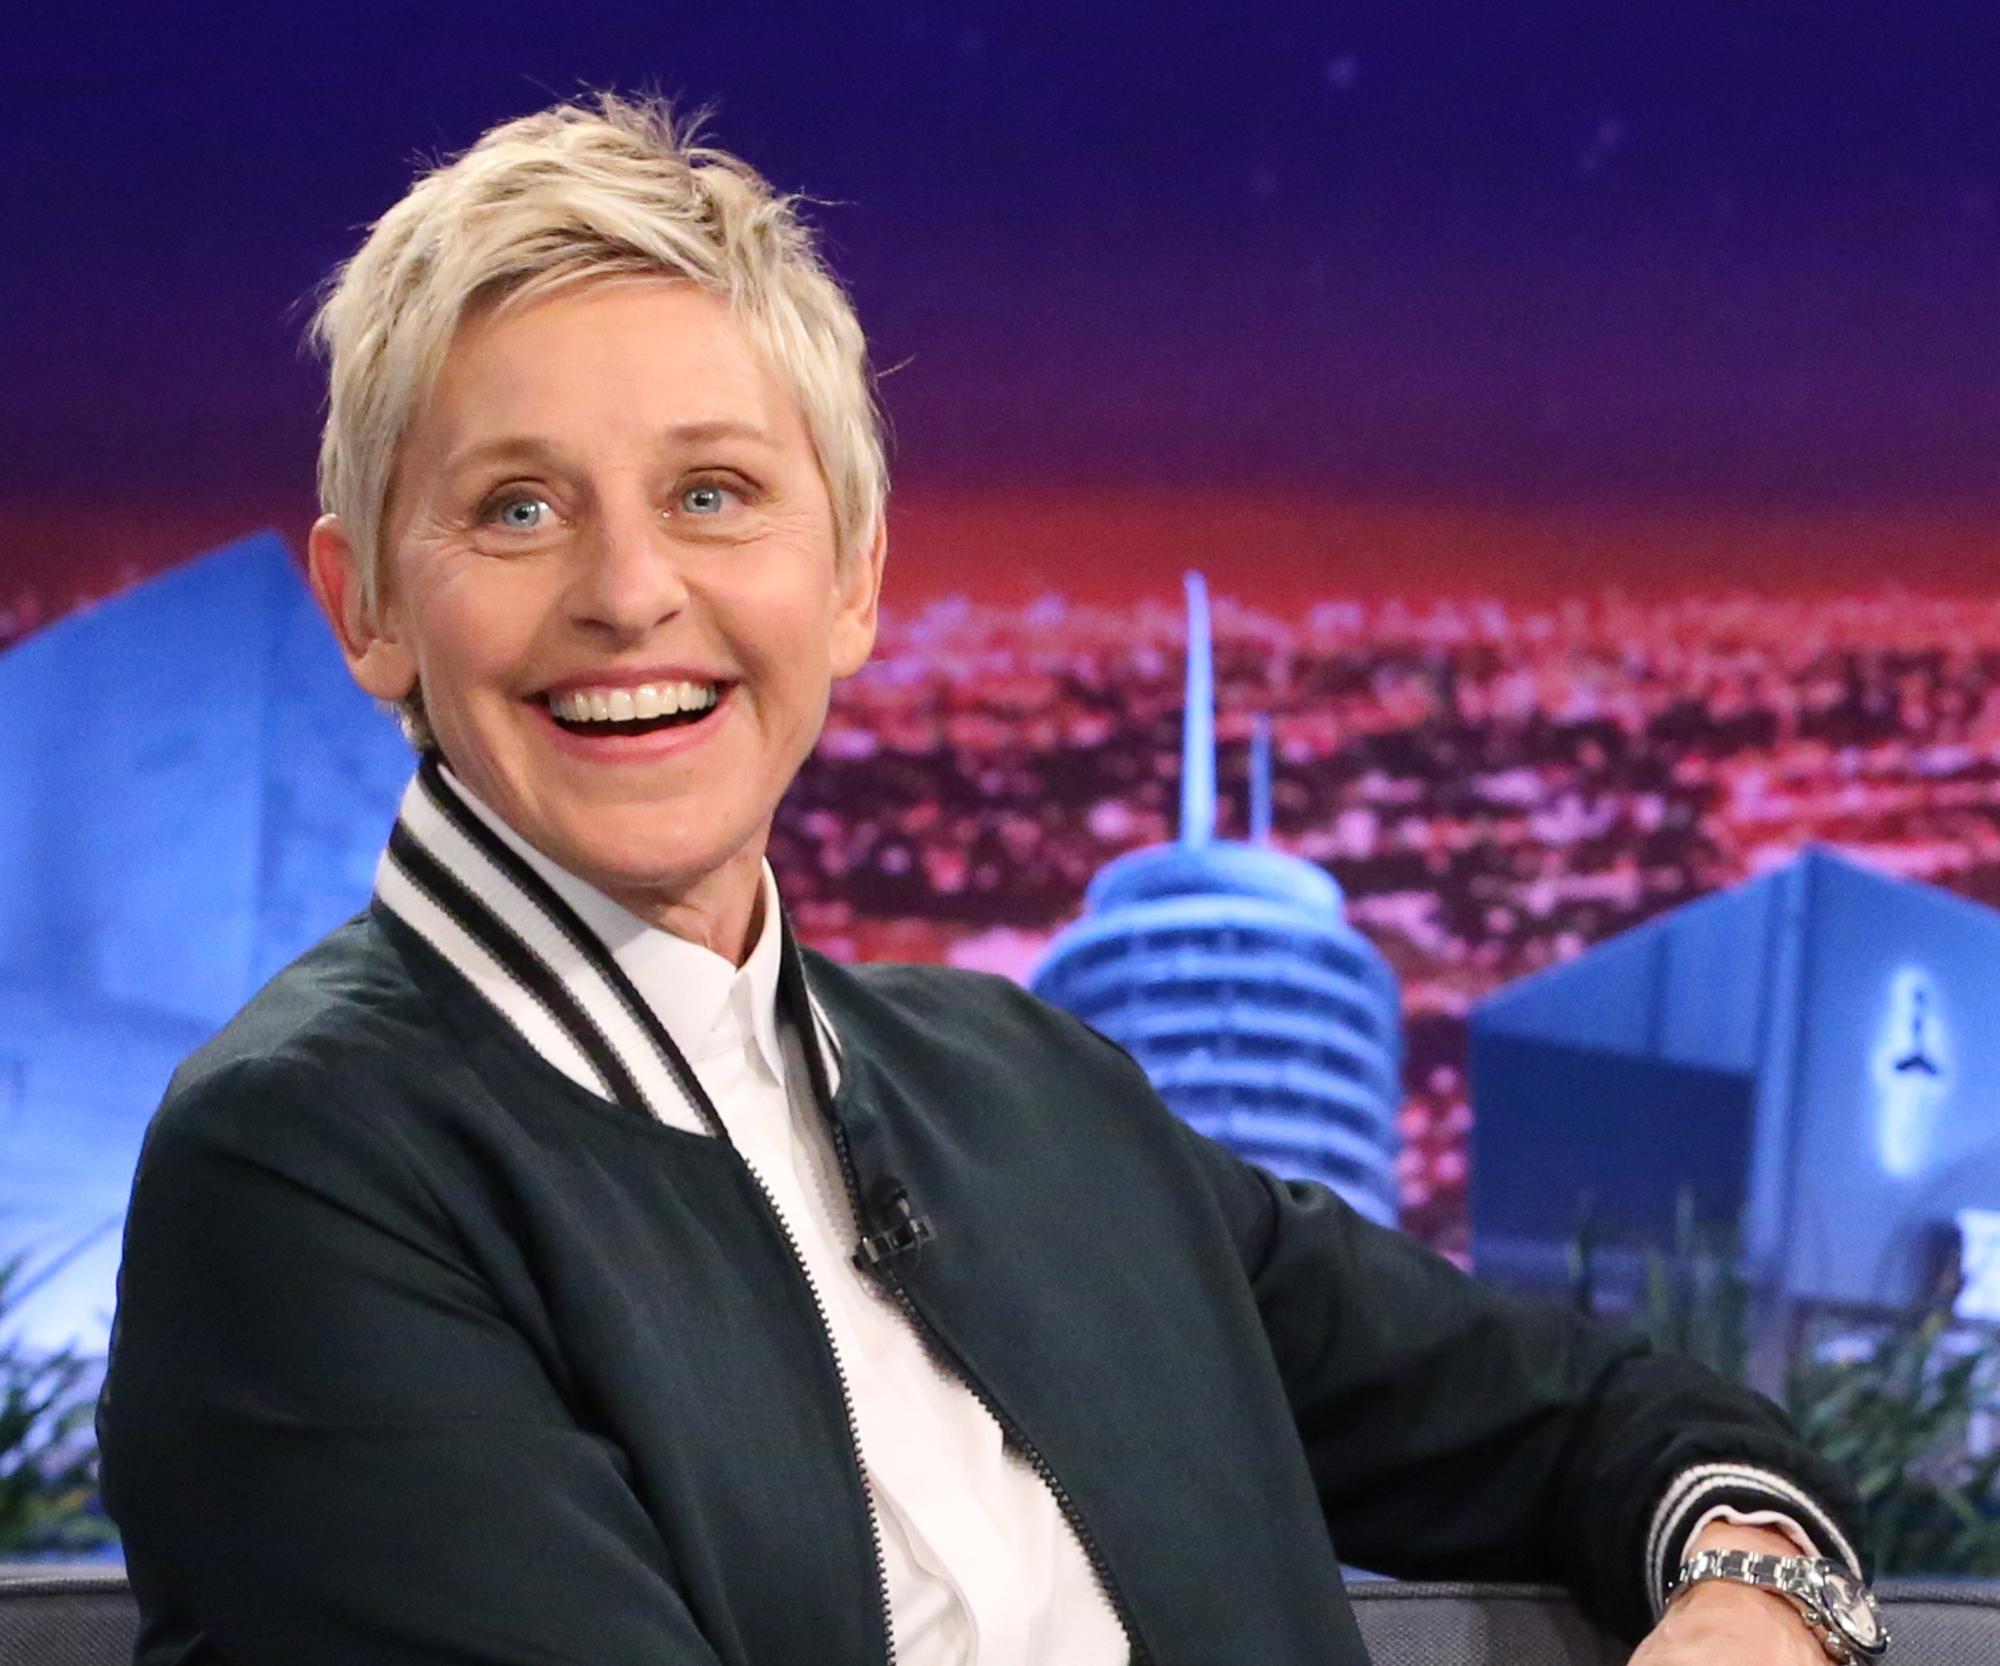 Ellen DeGeneres to be sued over breast joke